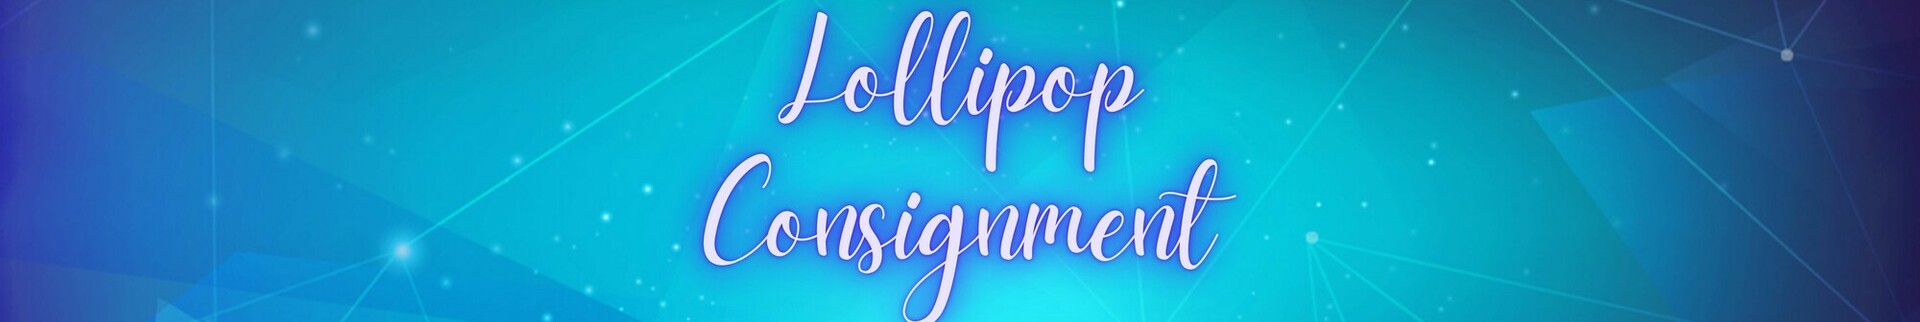 Lollipop Boutique's banner image.